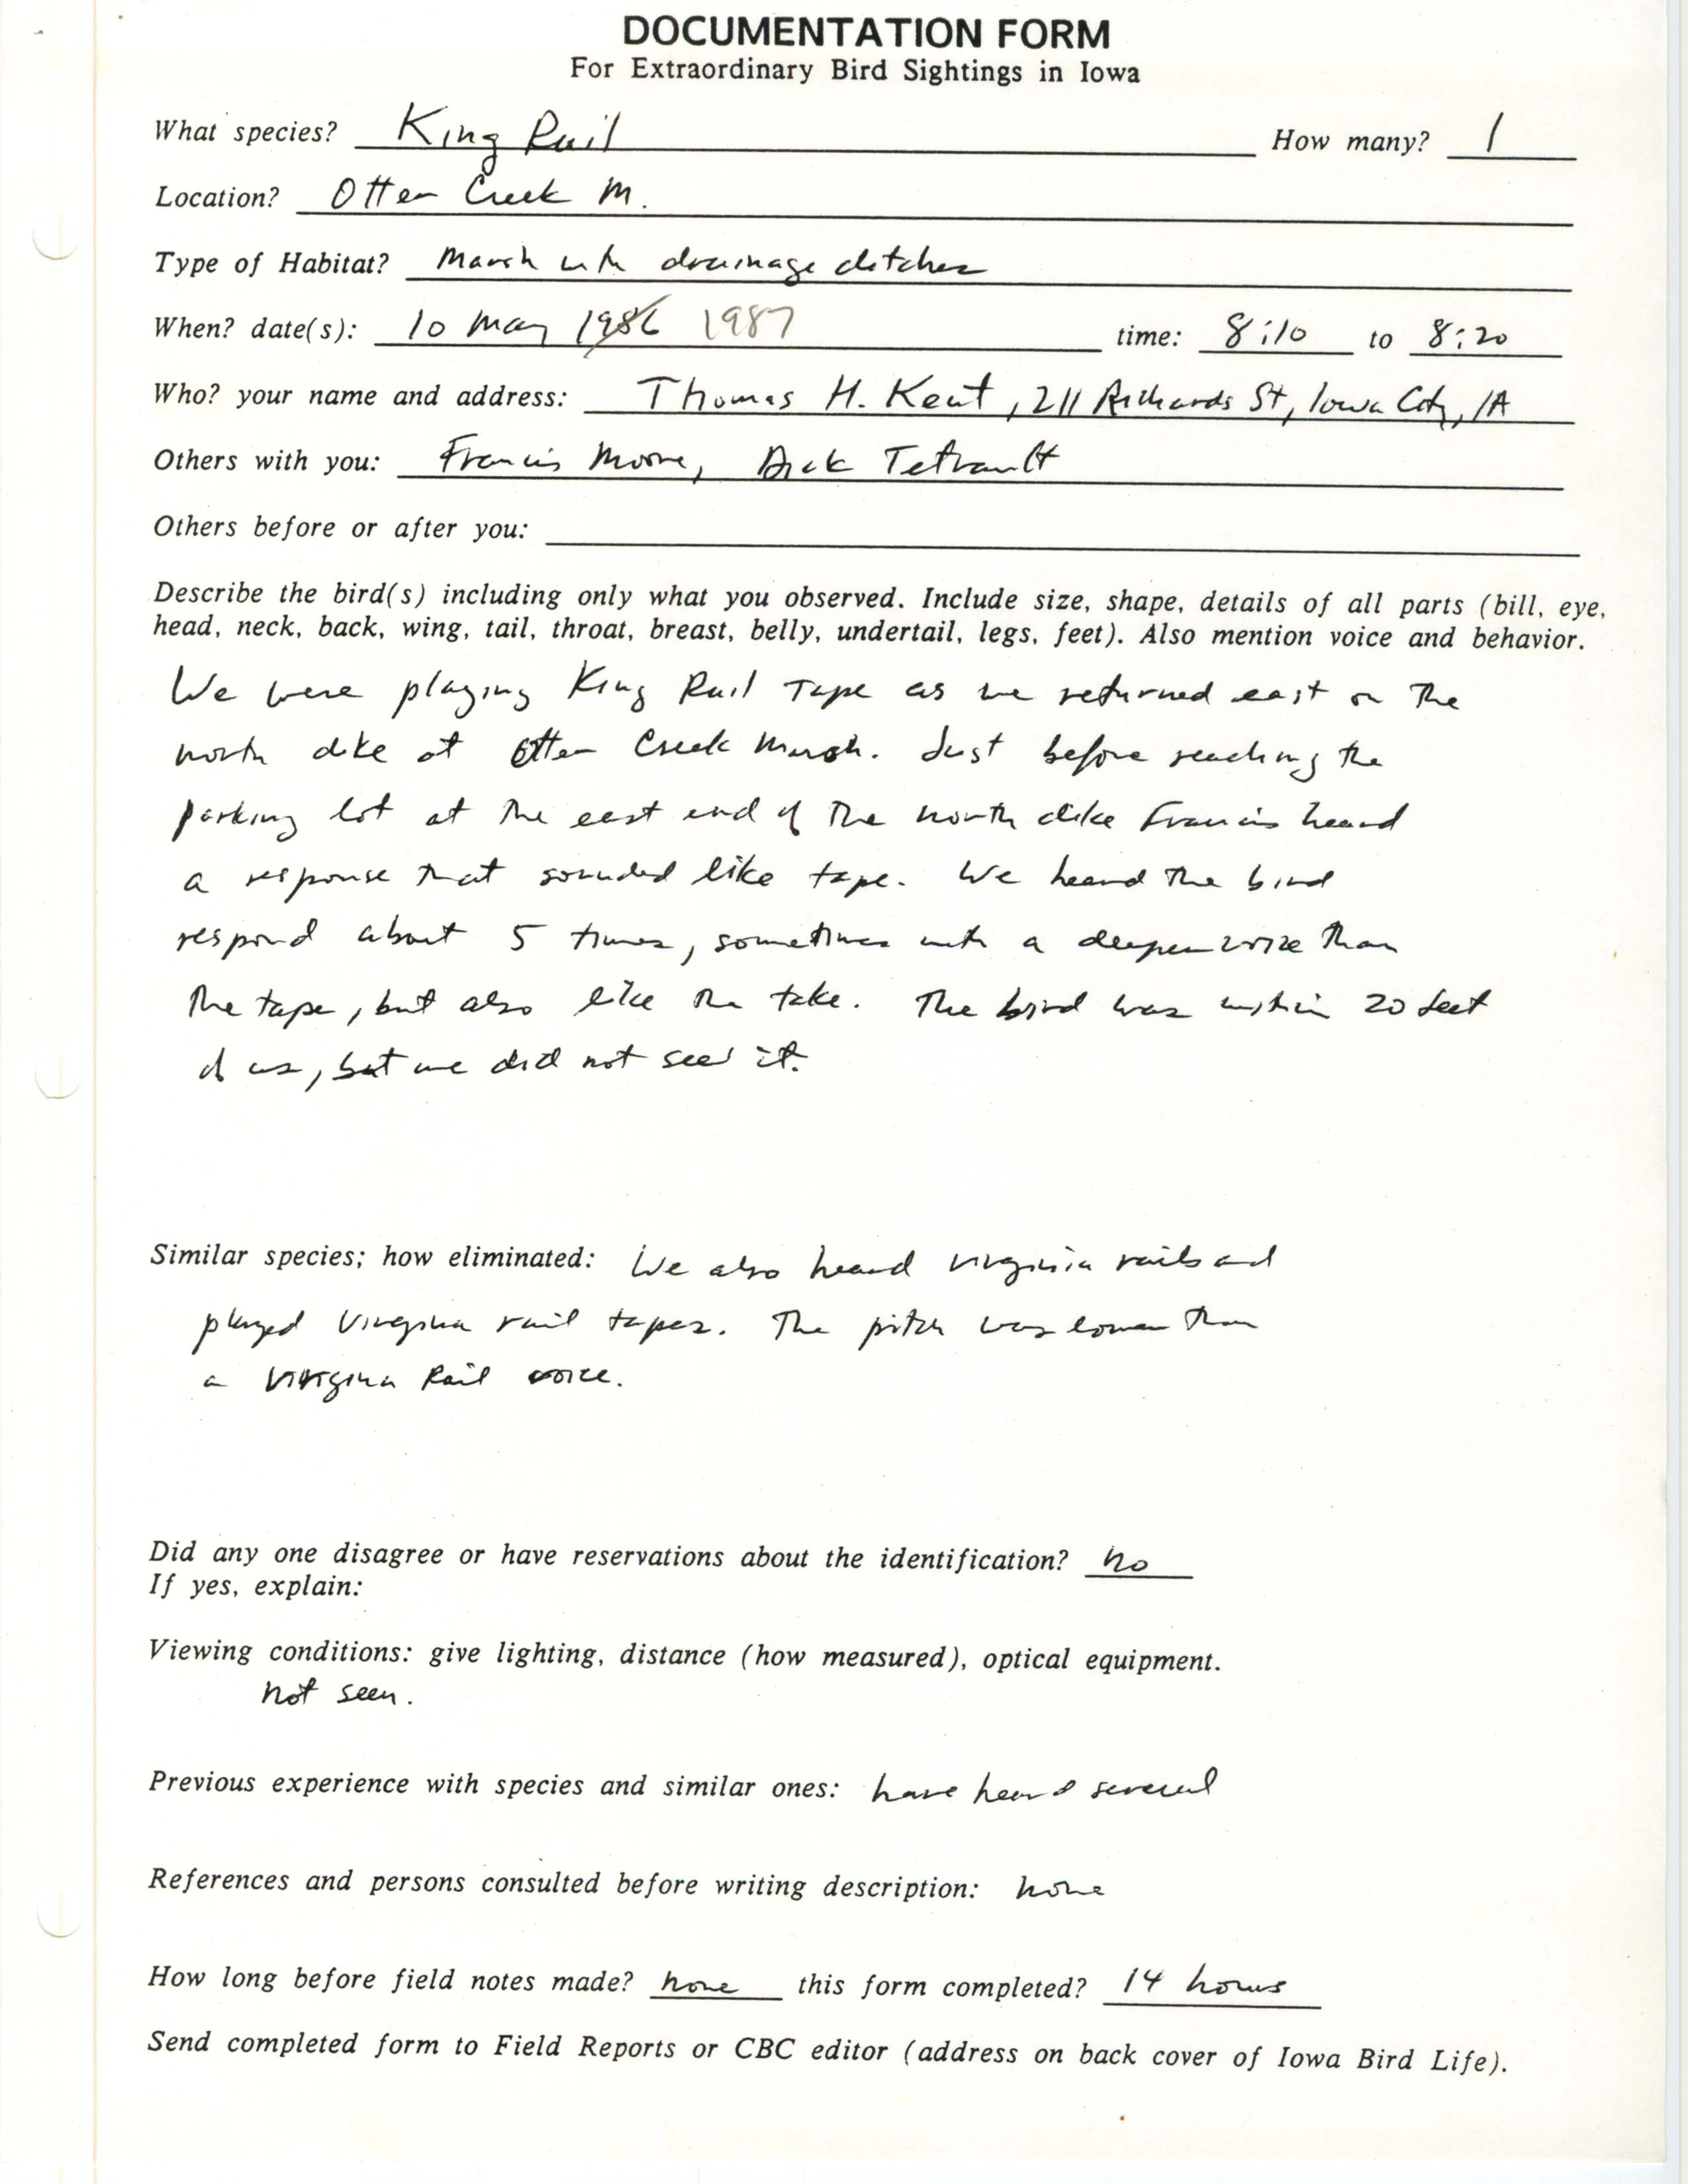 Rare bird documentation form for King Rail at Otter Creek Marsh, 1987